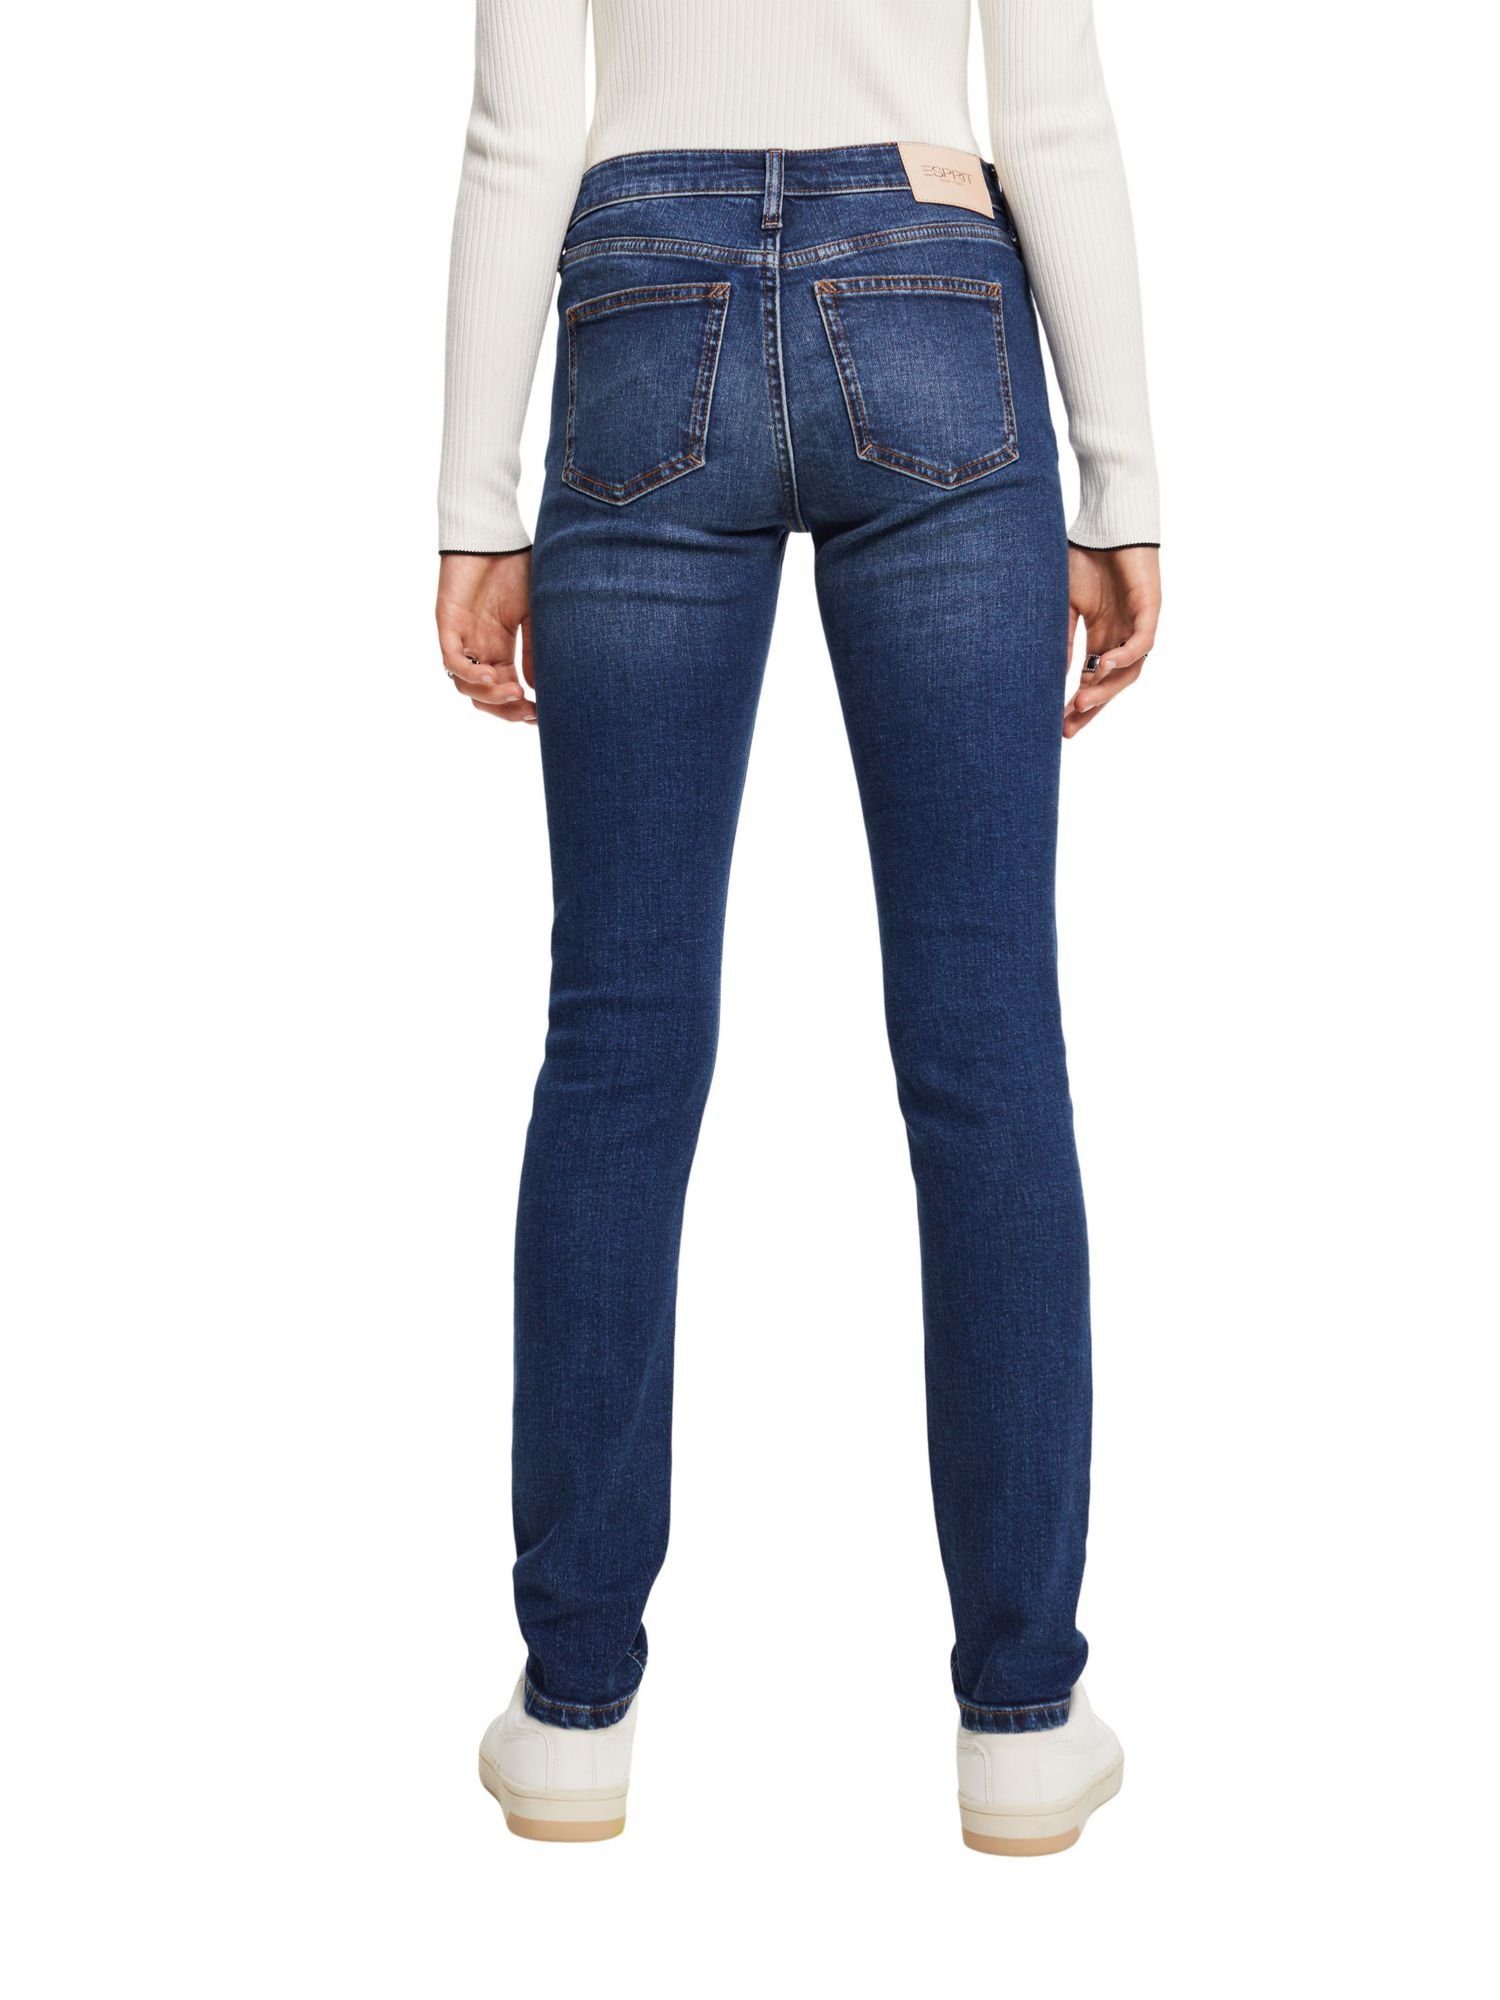 Bundhöhe Jeans mit mittlerer Esprit Schmale Slim-fit-Jeans